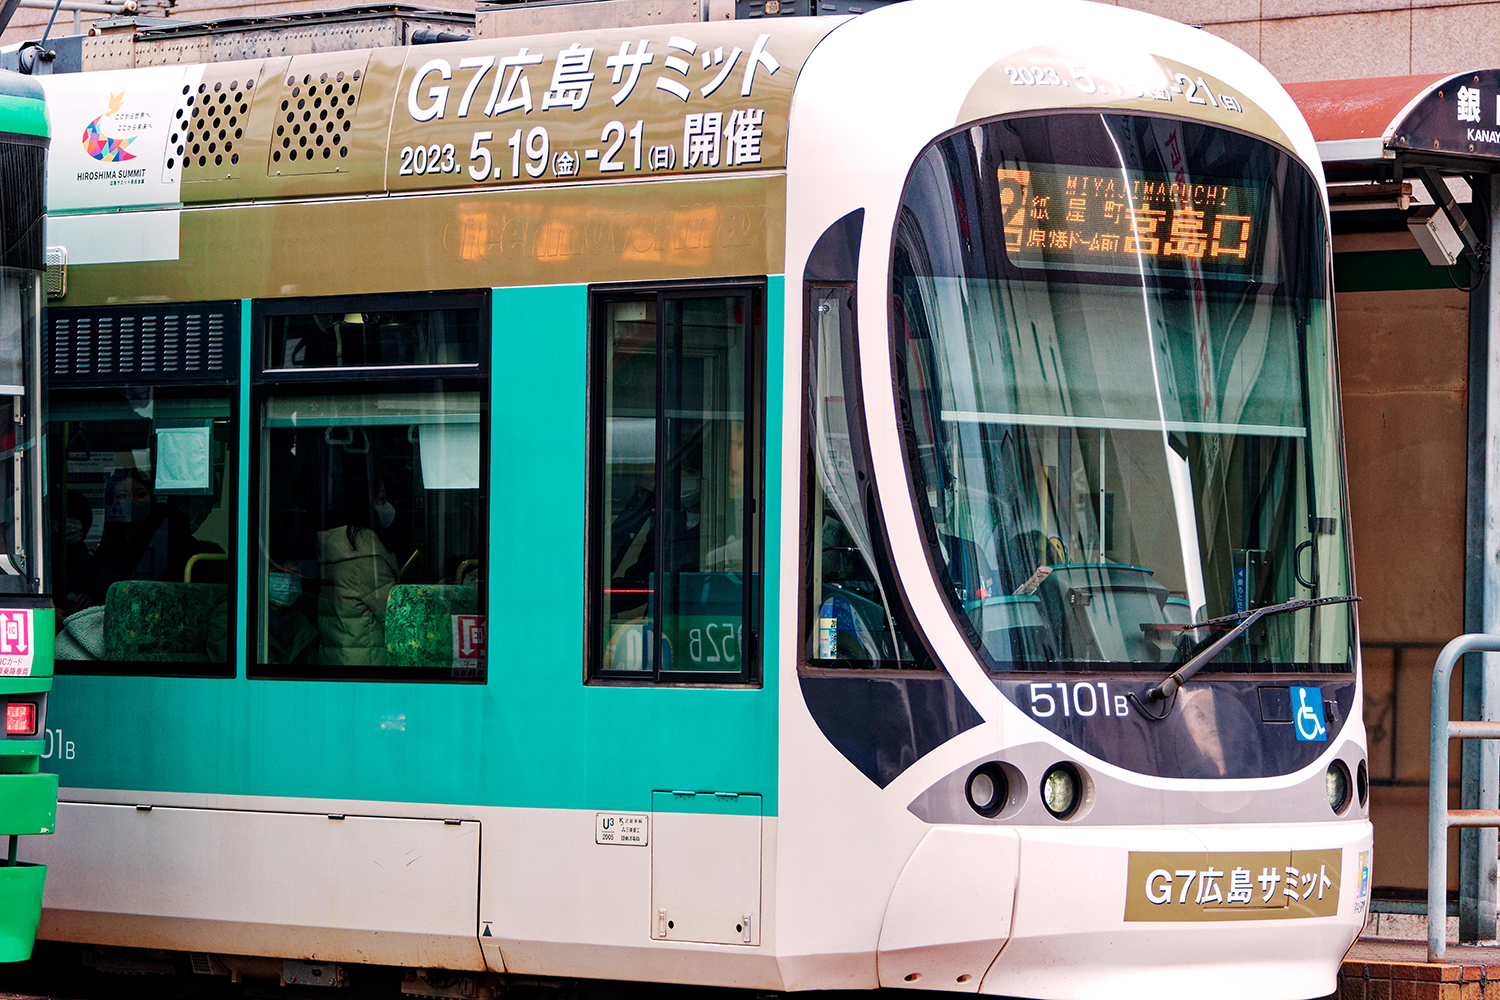 広島市内を走るG7サミットのラッピングを施した路面電車の写真